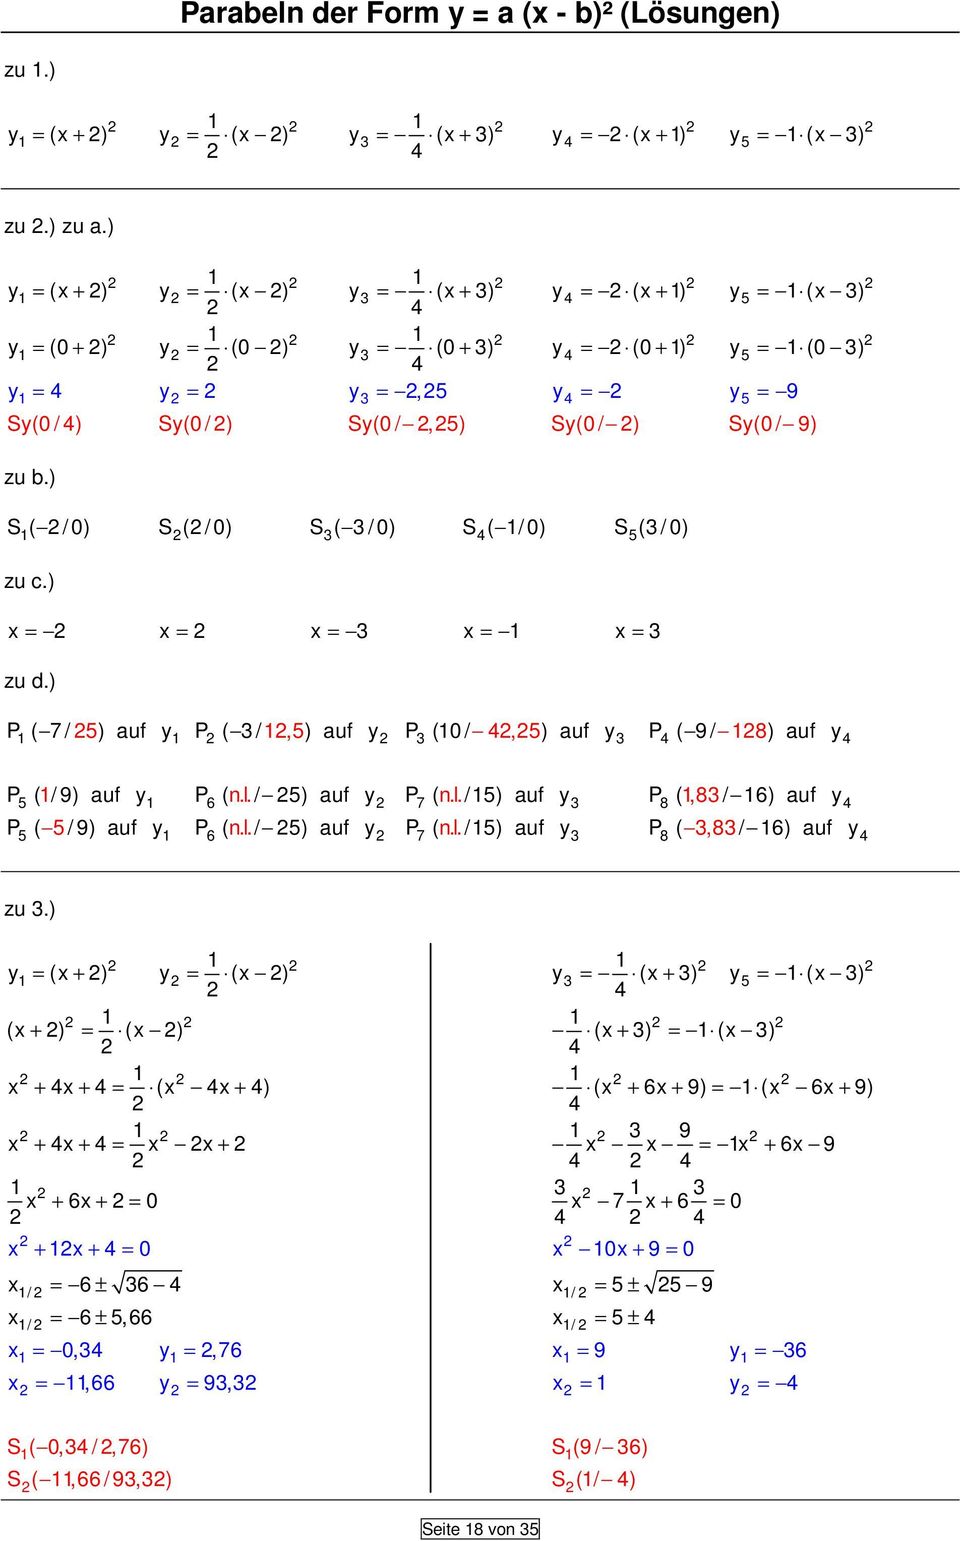 ) x = x = x = x = x = zu d.) P ( 7 / ) auf P ( /,) auf P (0 /,) auf P ( 9 / 8) auf P ( / 9) auf P ( n.l. / ) auf P ( n.l. /) auf P (,8 / 6) auf 6 7 8 P ( / 9) auf P ( n. l. / ) auf P ( n.l. /) auf P (,8 / 6) auf 6 7 8 zu.